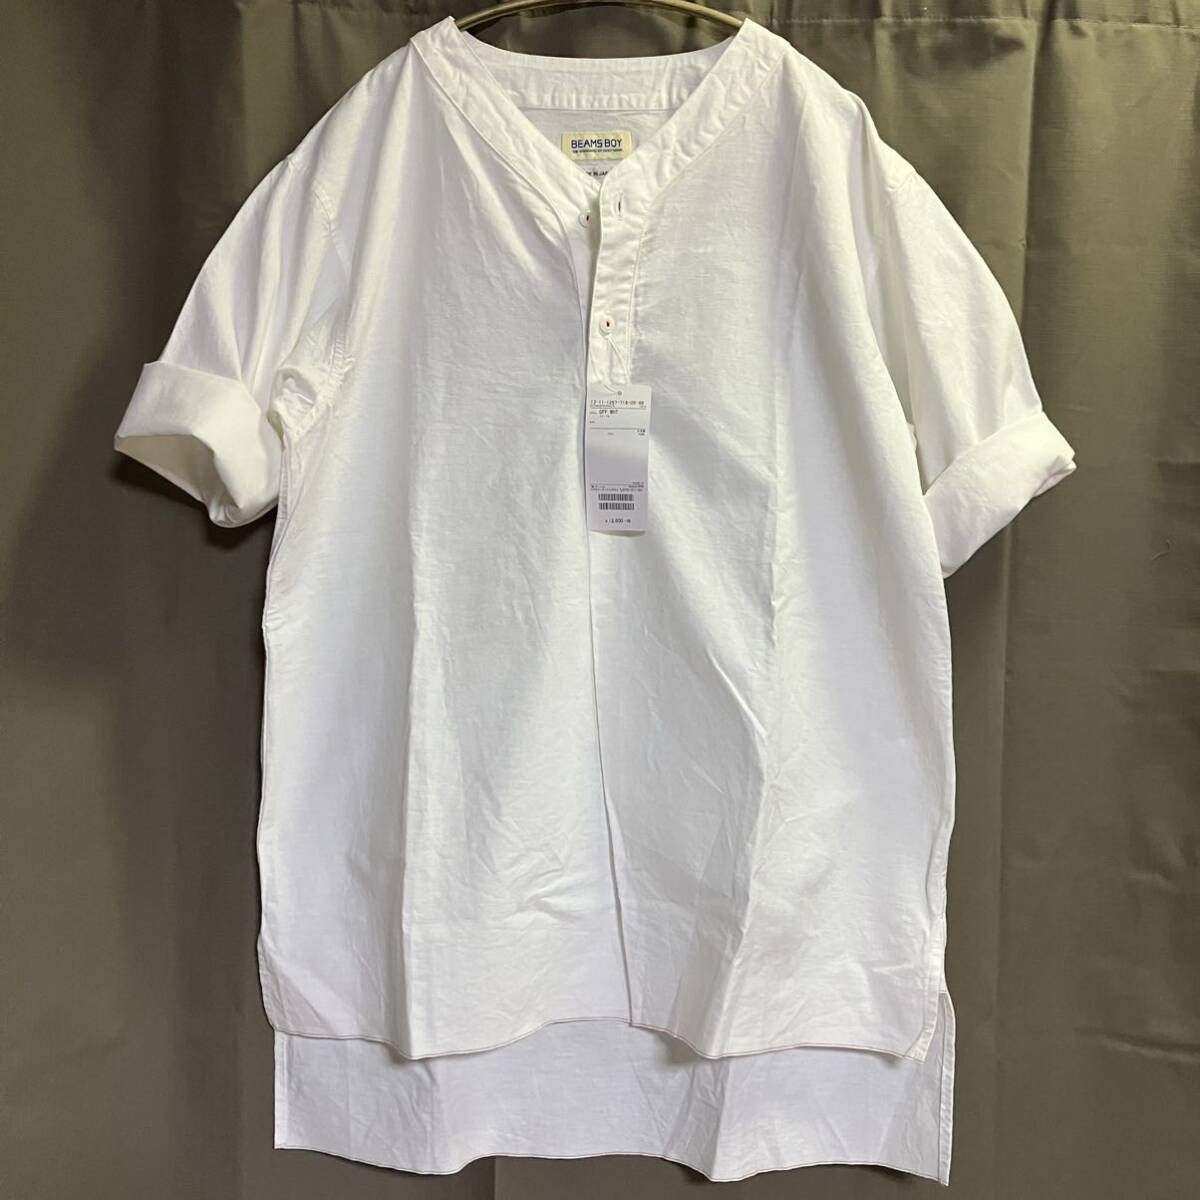  с биркой 12,800 иен BEAMS BOY половина .. рубашка белый цвет сделано в Японии Beams Boy * кошка pohs бесплатный 